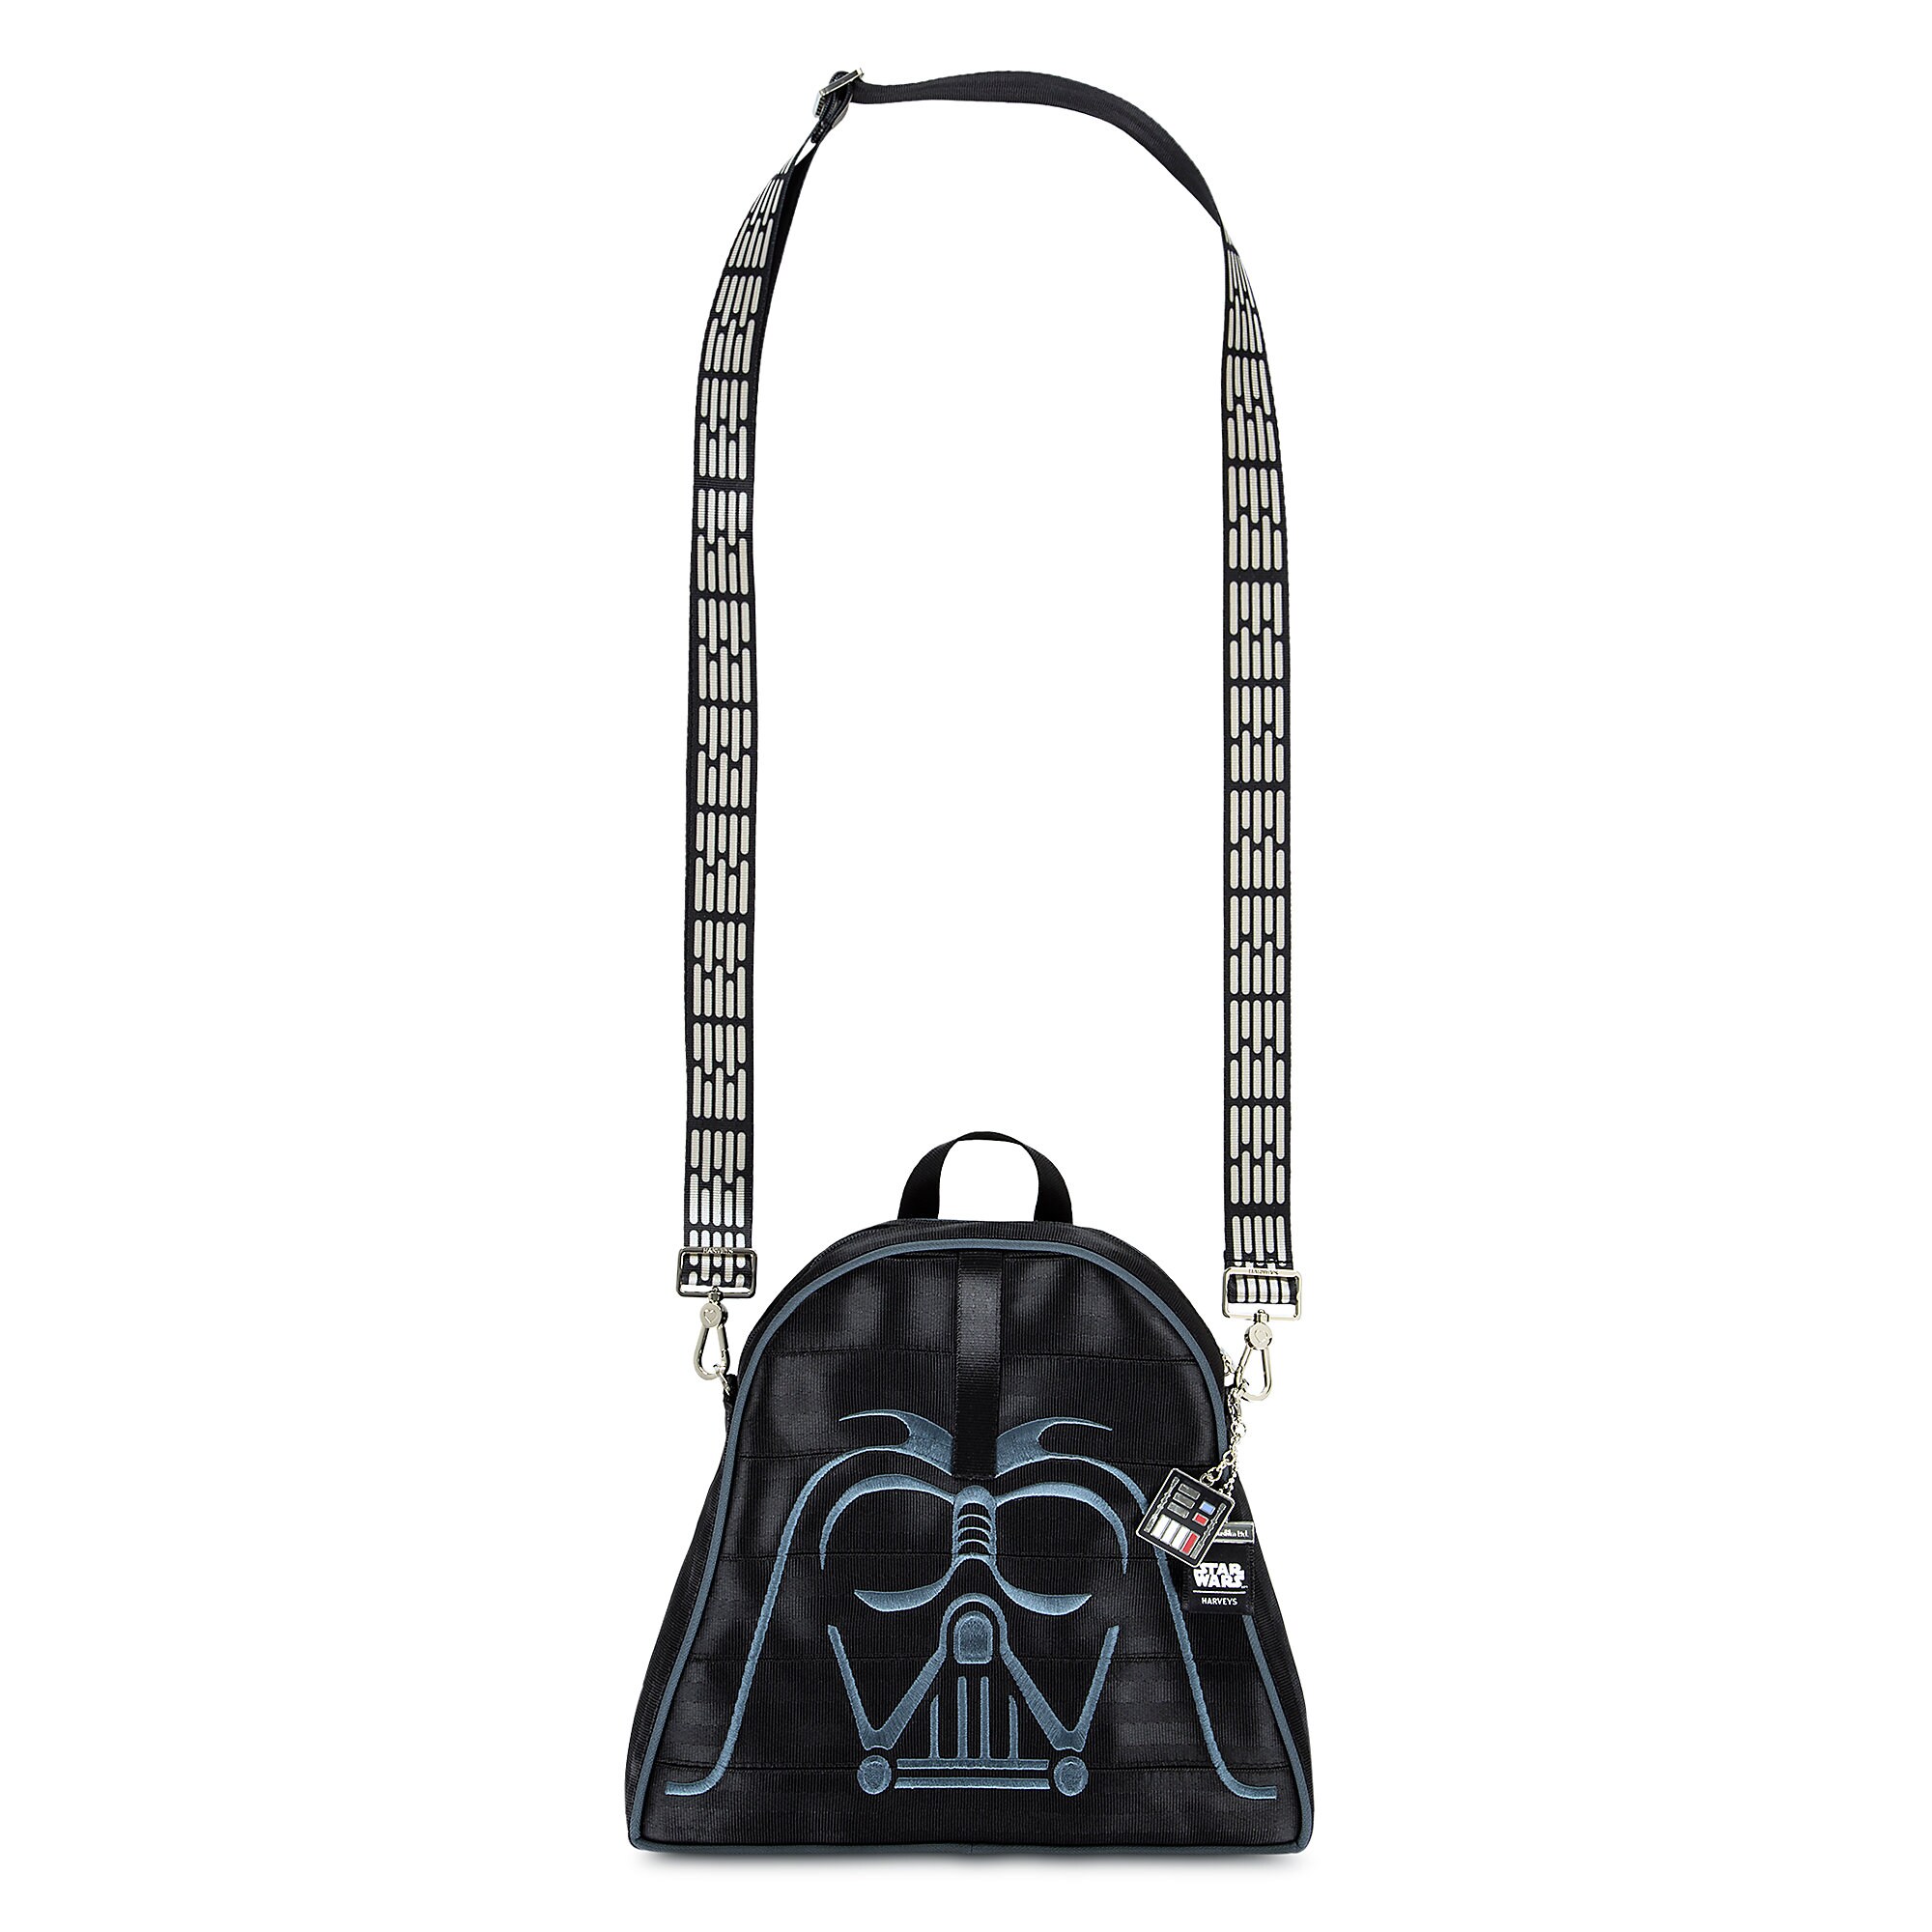 Darth Vader Crossbody Bag by Harveys - Star Wars